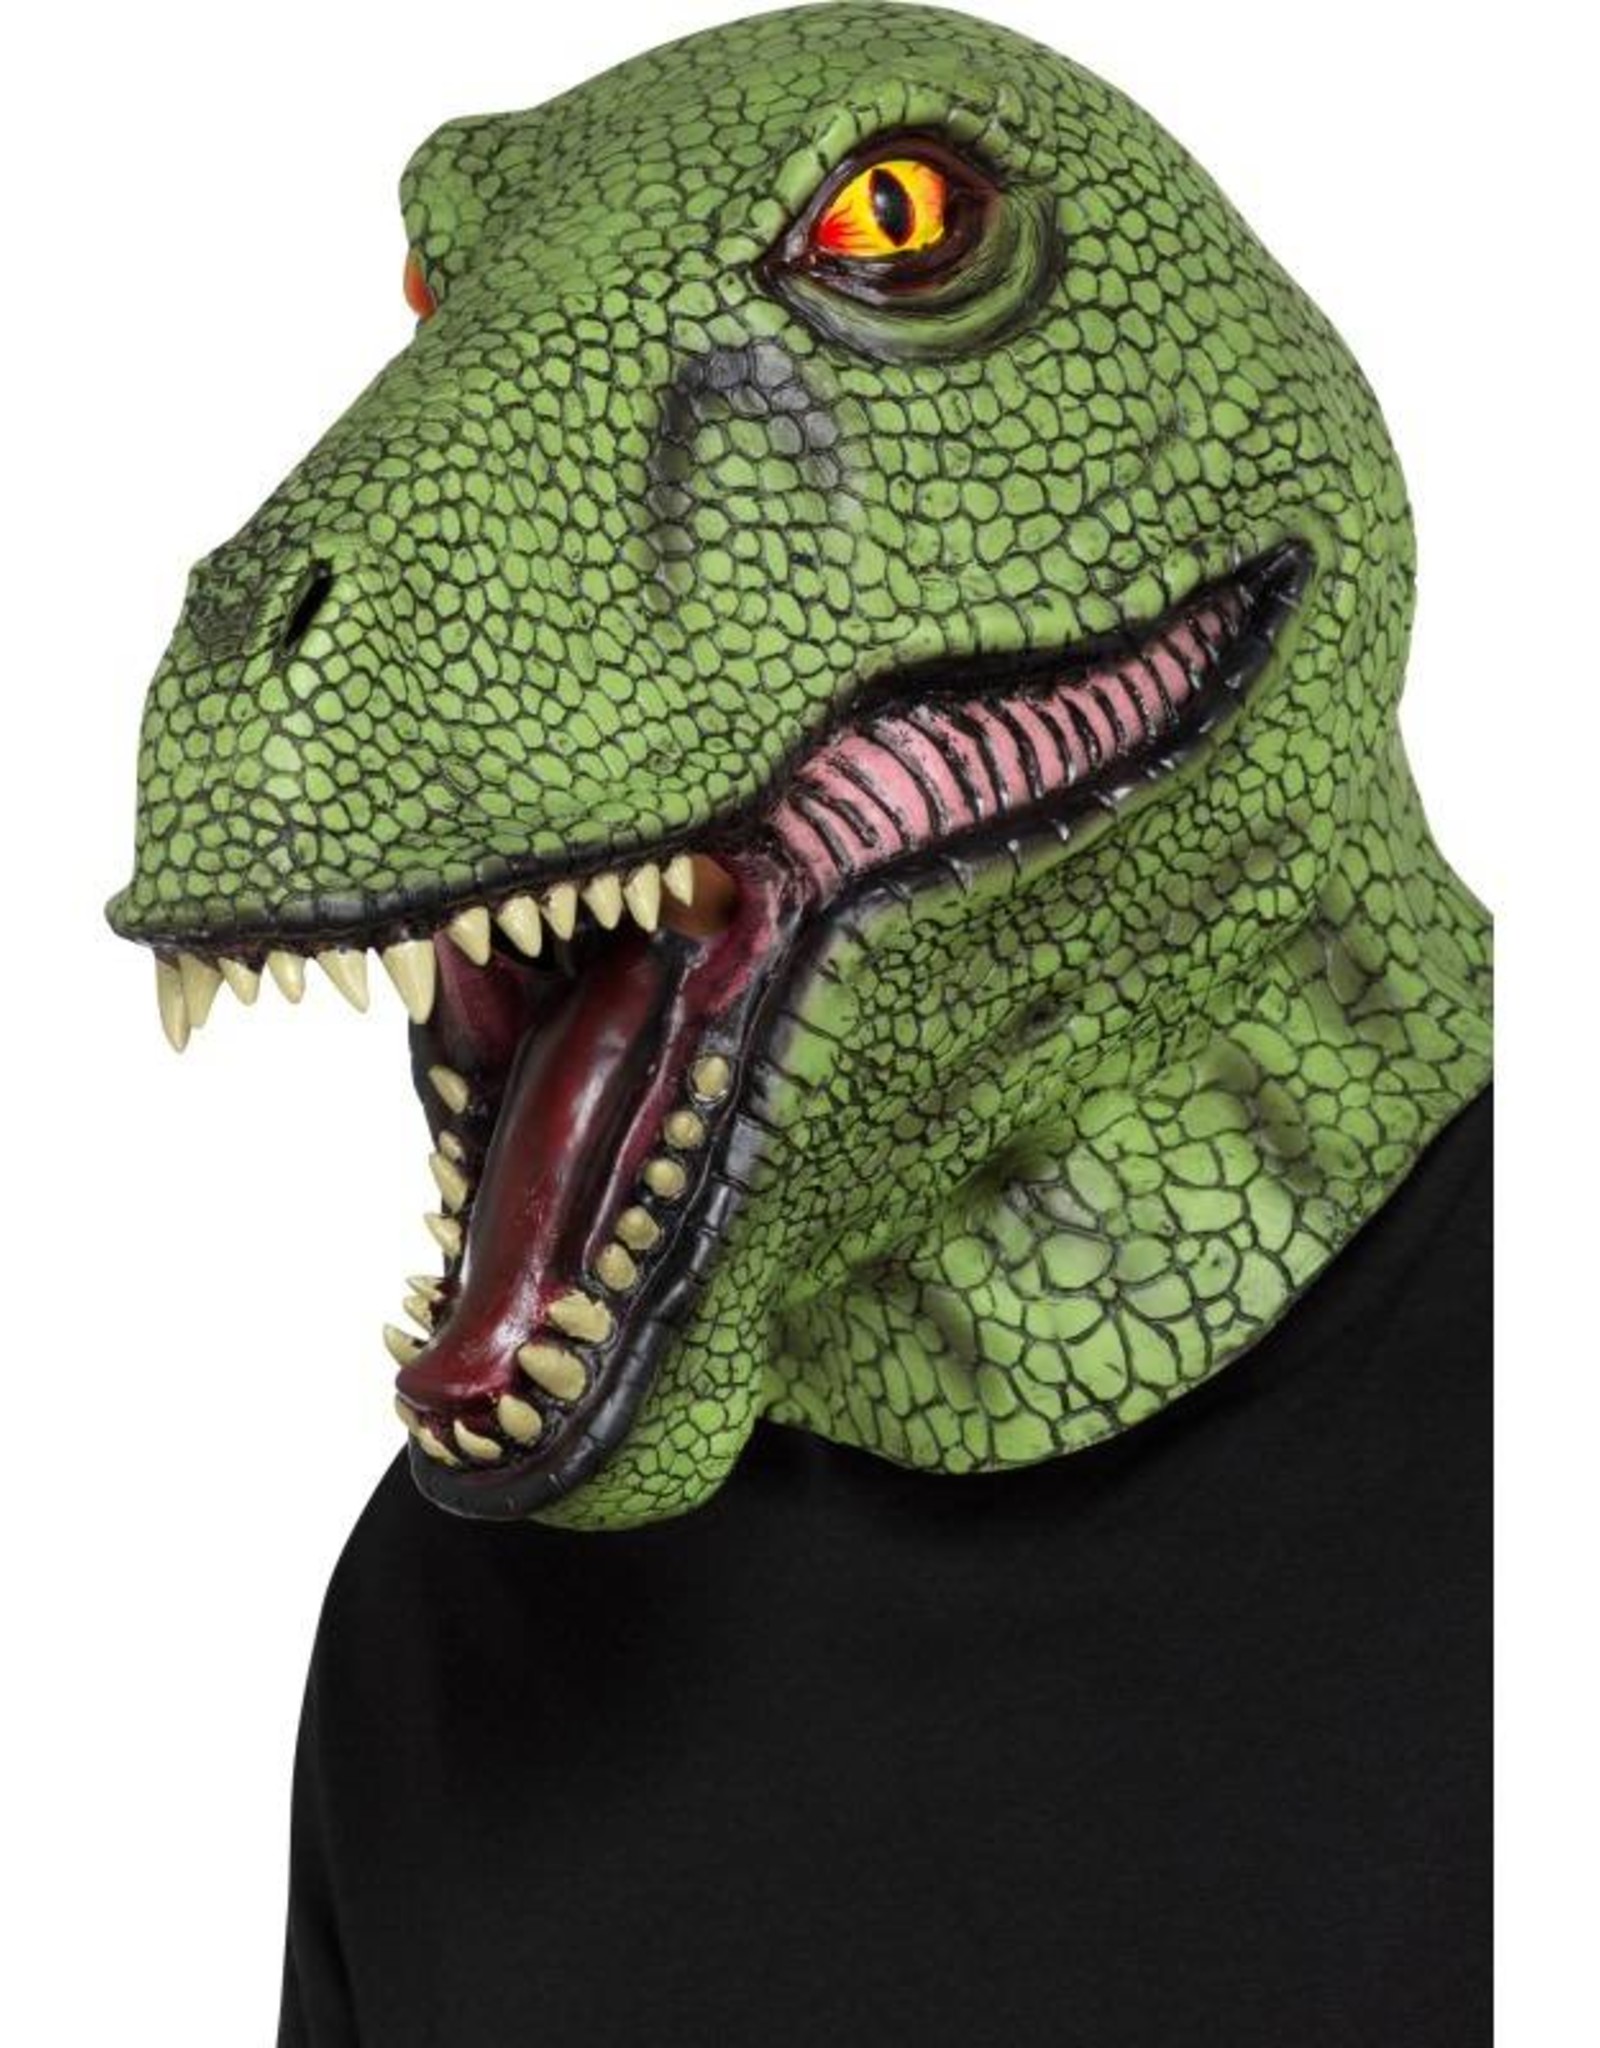 Dinosaur Latex Mask